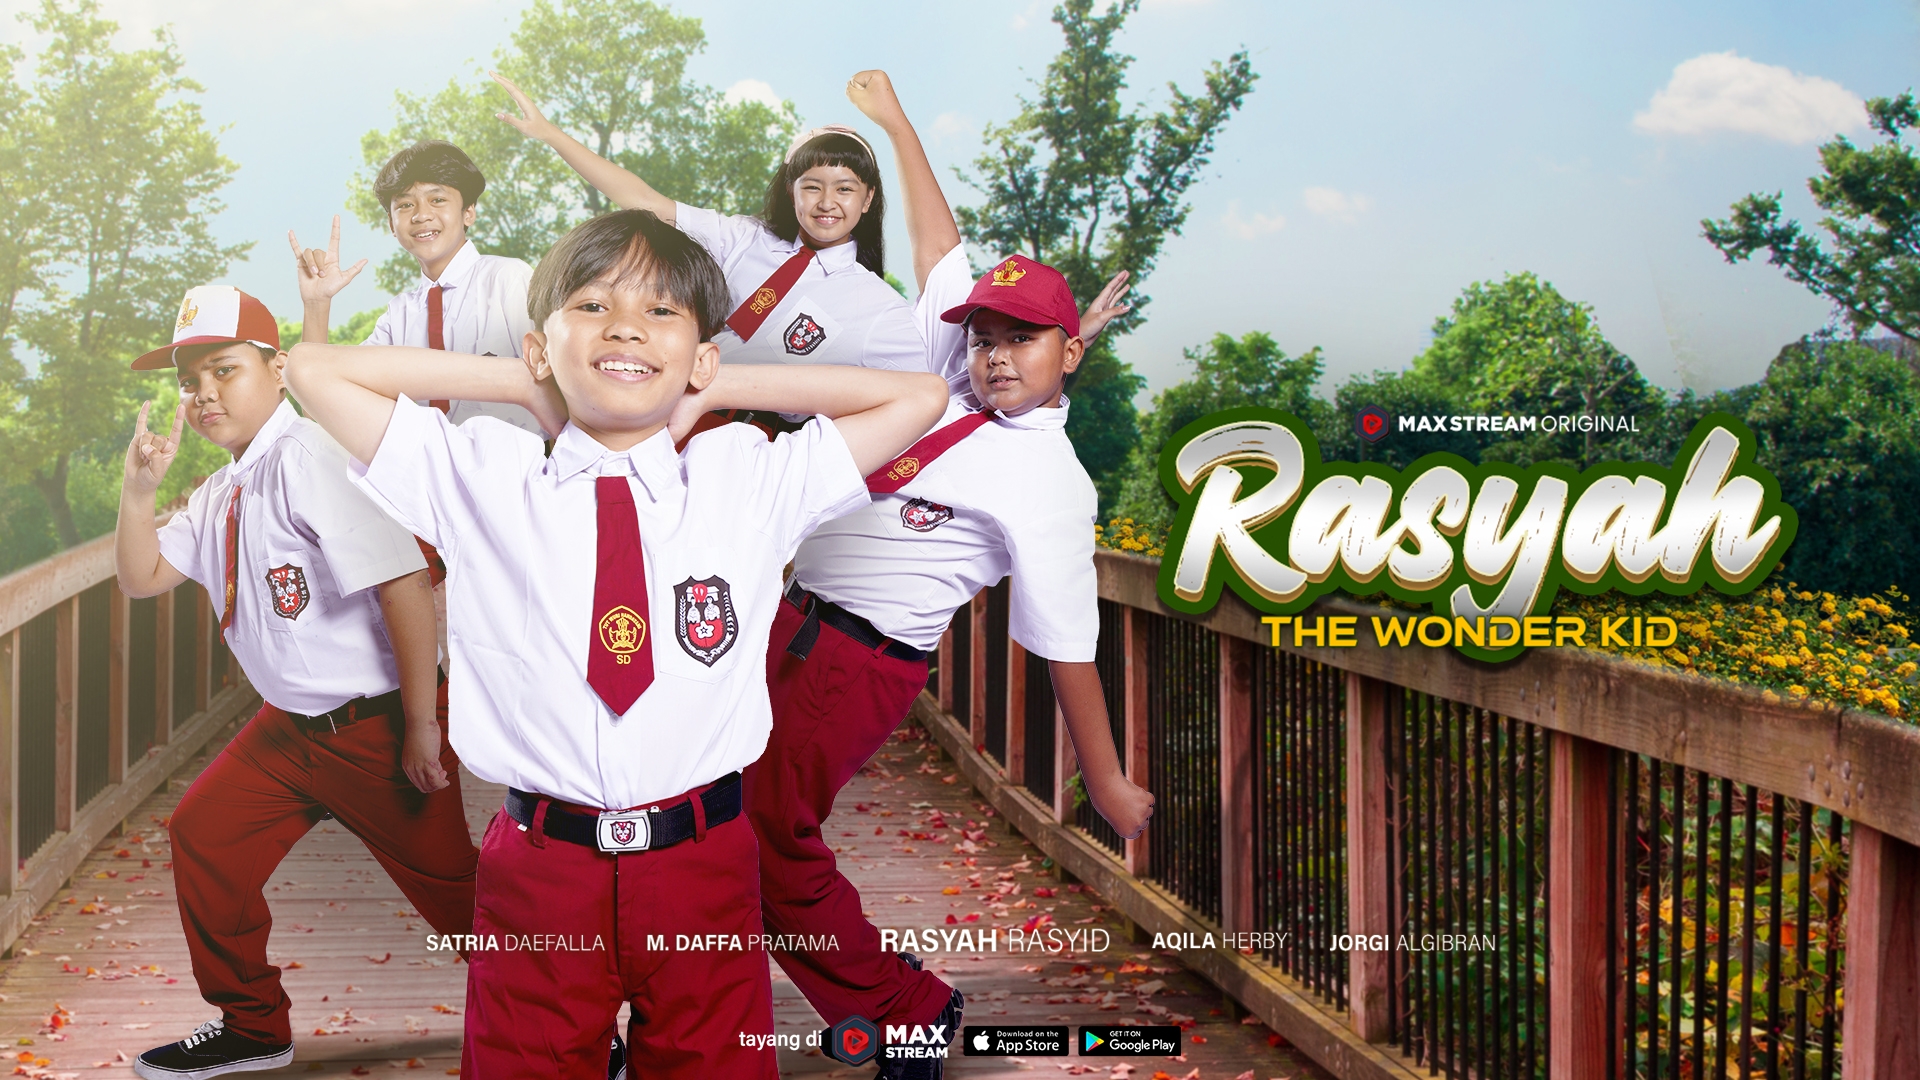 Kisah Inspiratif Rasyah Rasyid yang menjadi seorang Pro Player di Rasyah The Wonder Kid Movie